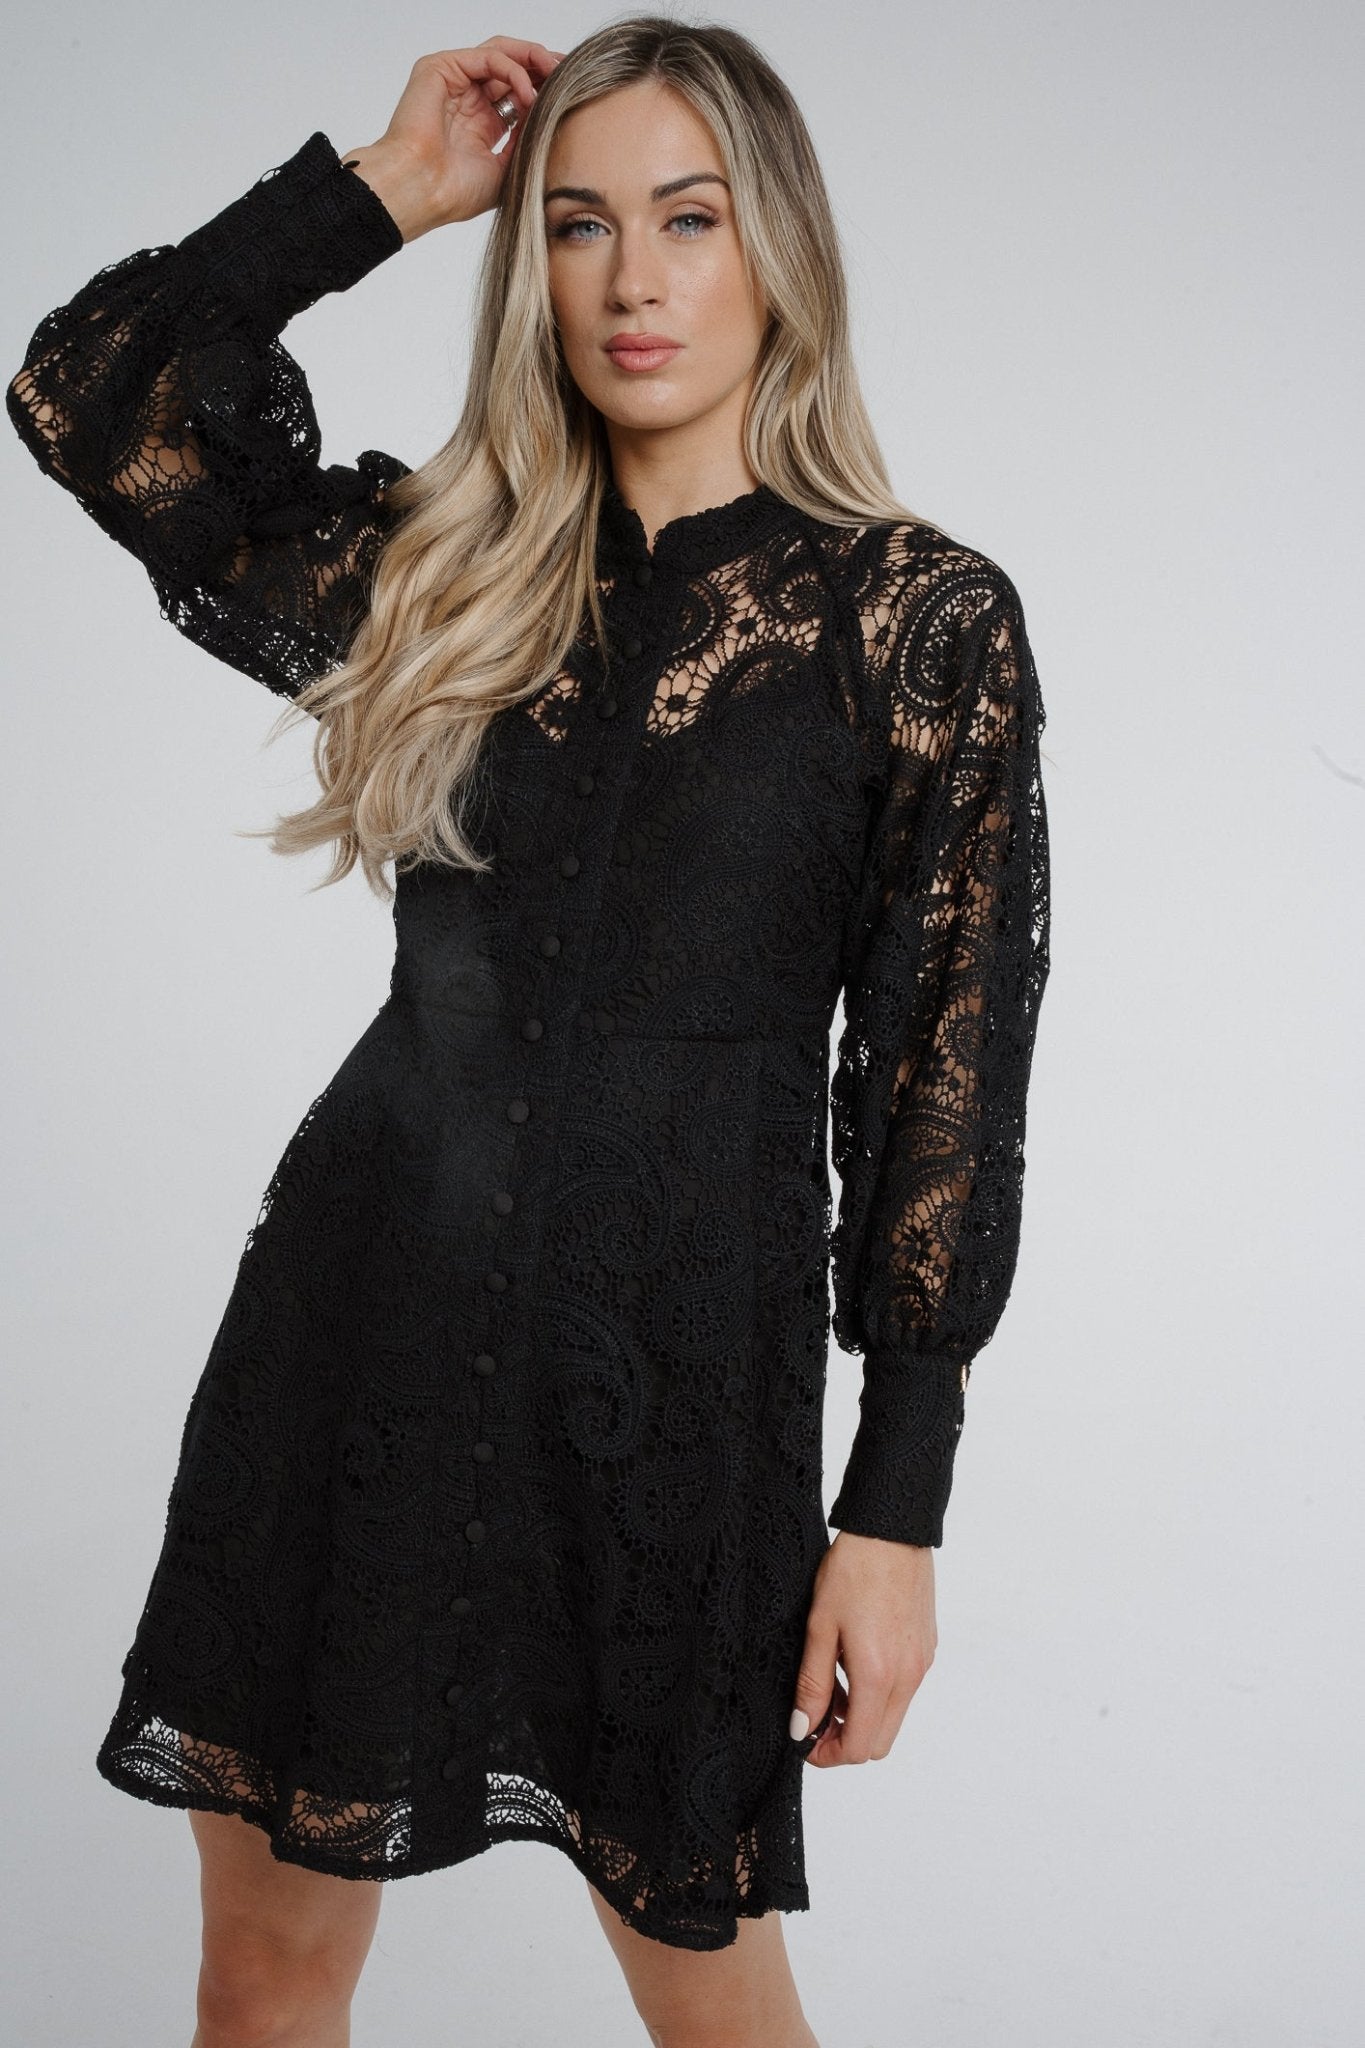 Jasmine Long Sleeve Lace Dress In Black - The Walk in Wardrobe